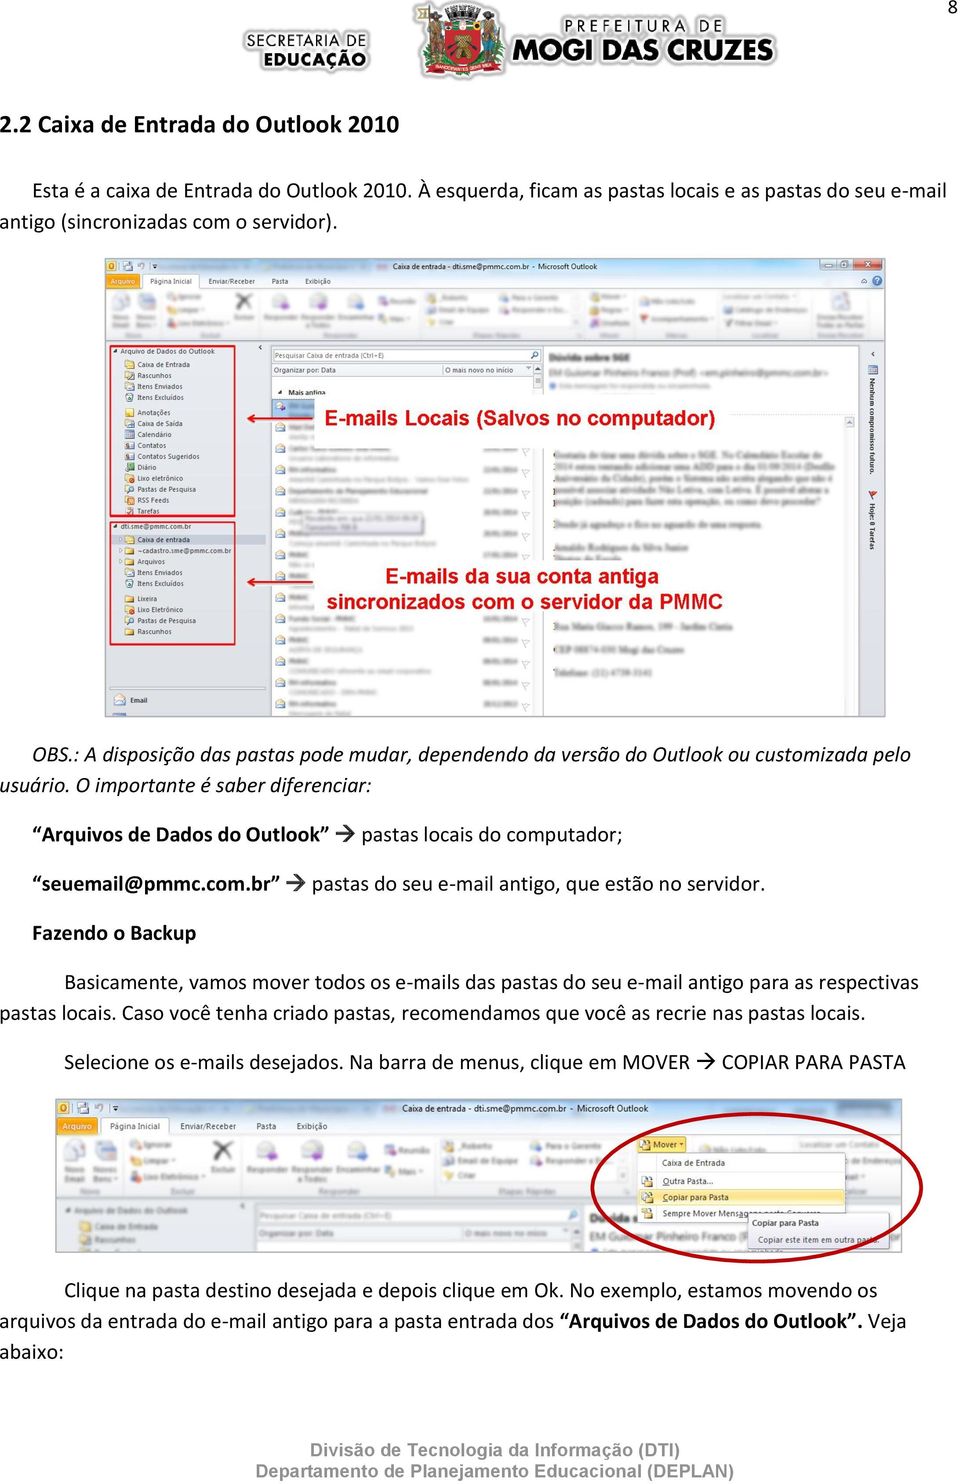 O importante é saber diferenciar: Arquivos de Dados do Outlook pastas locais do computador; seuemail@pmmc.com.br pastas do seu e-mail antigo, que estão no servidor.